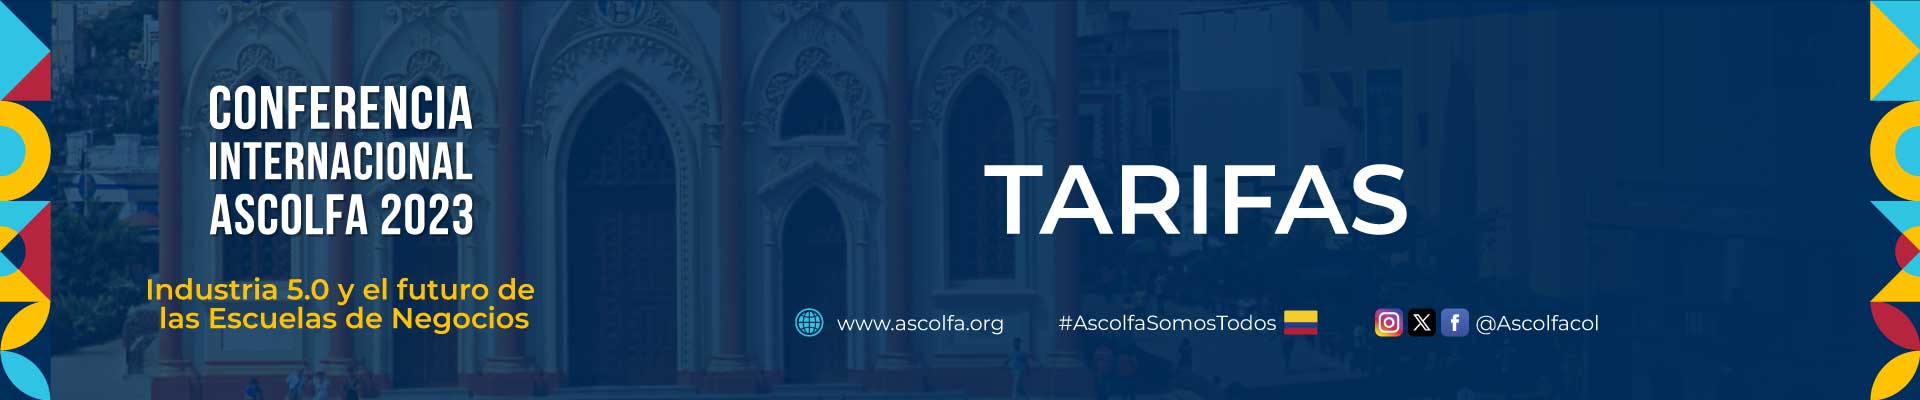 Banner Conferencia Internacional ASCOLFA 2023